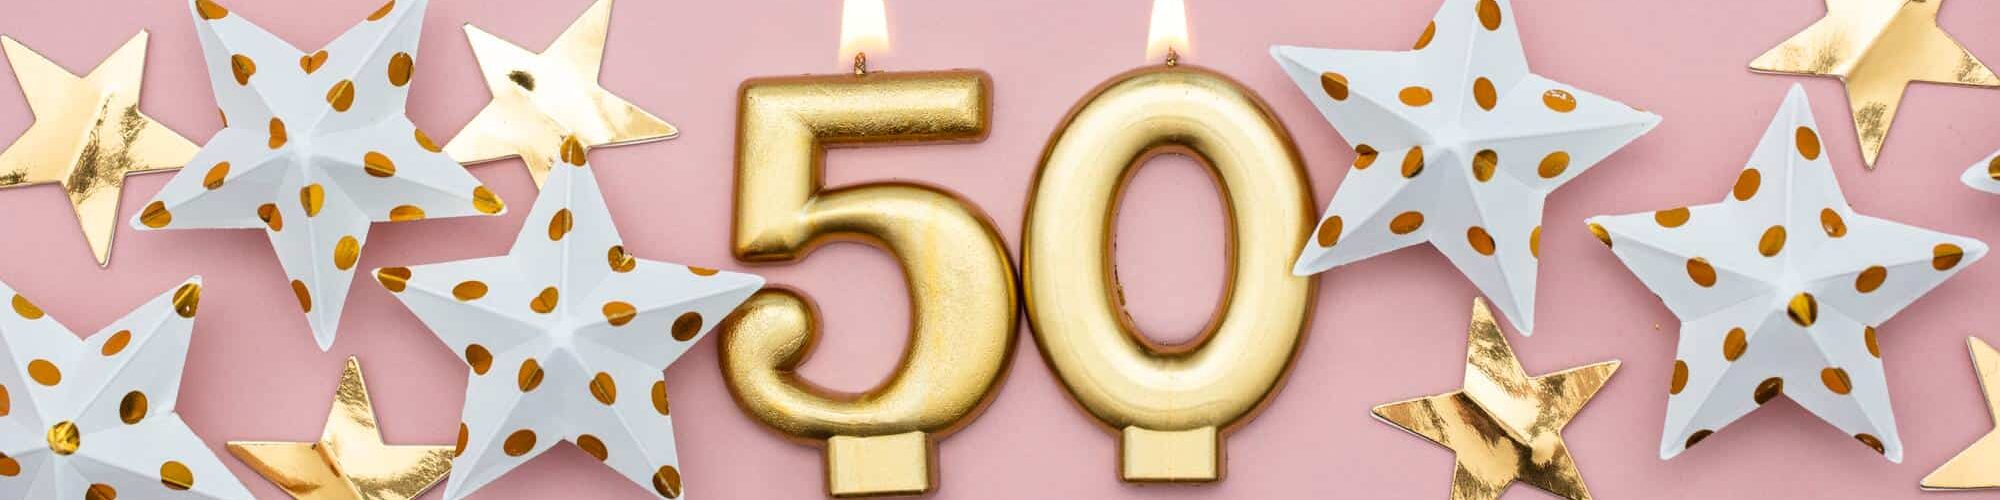 Organiser un anniversaire pour 50 ans